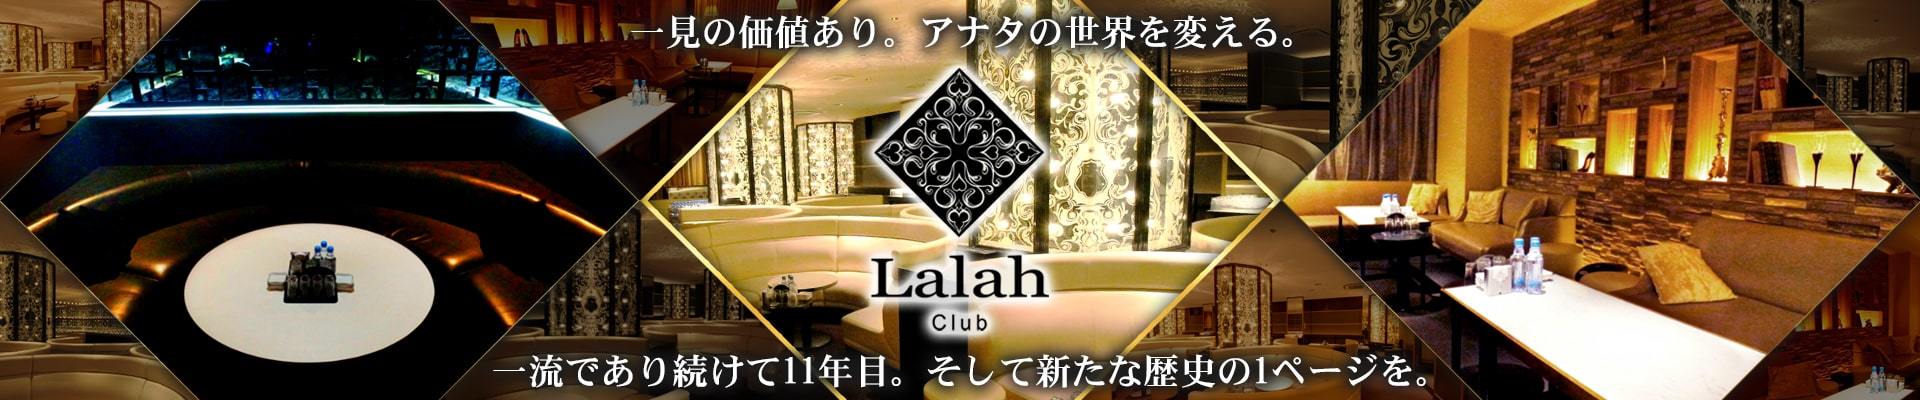 大宮のキャバクラ「Club Lalah(ララァ)」